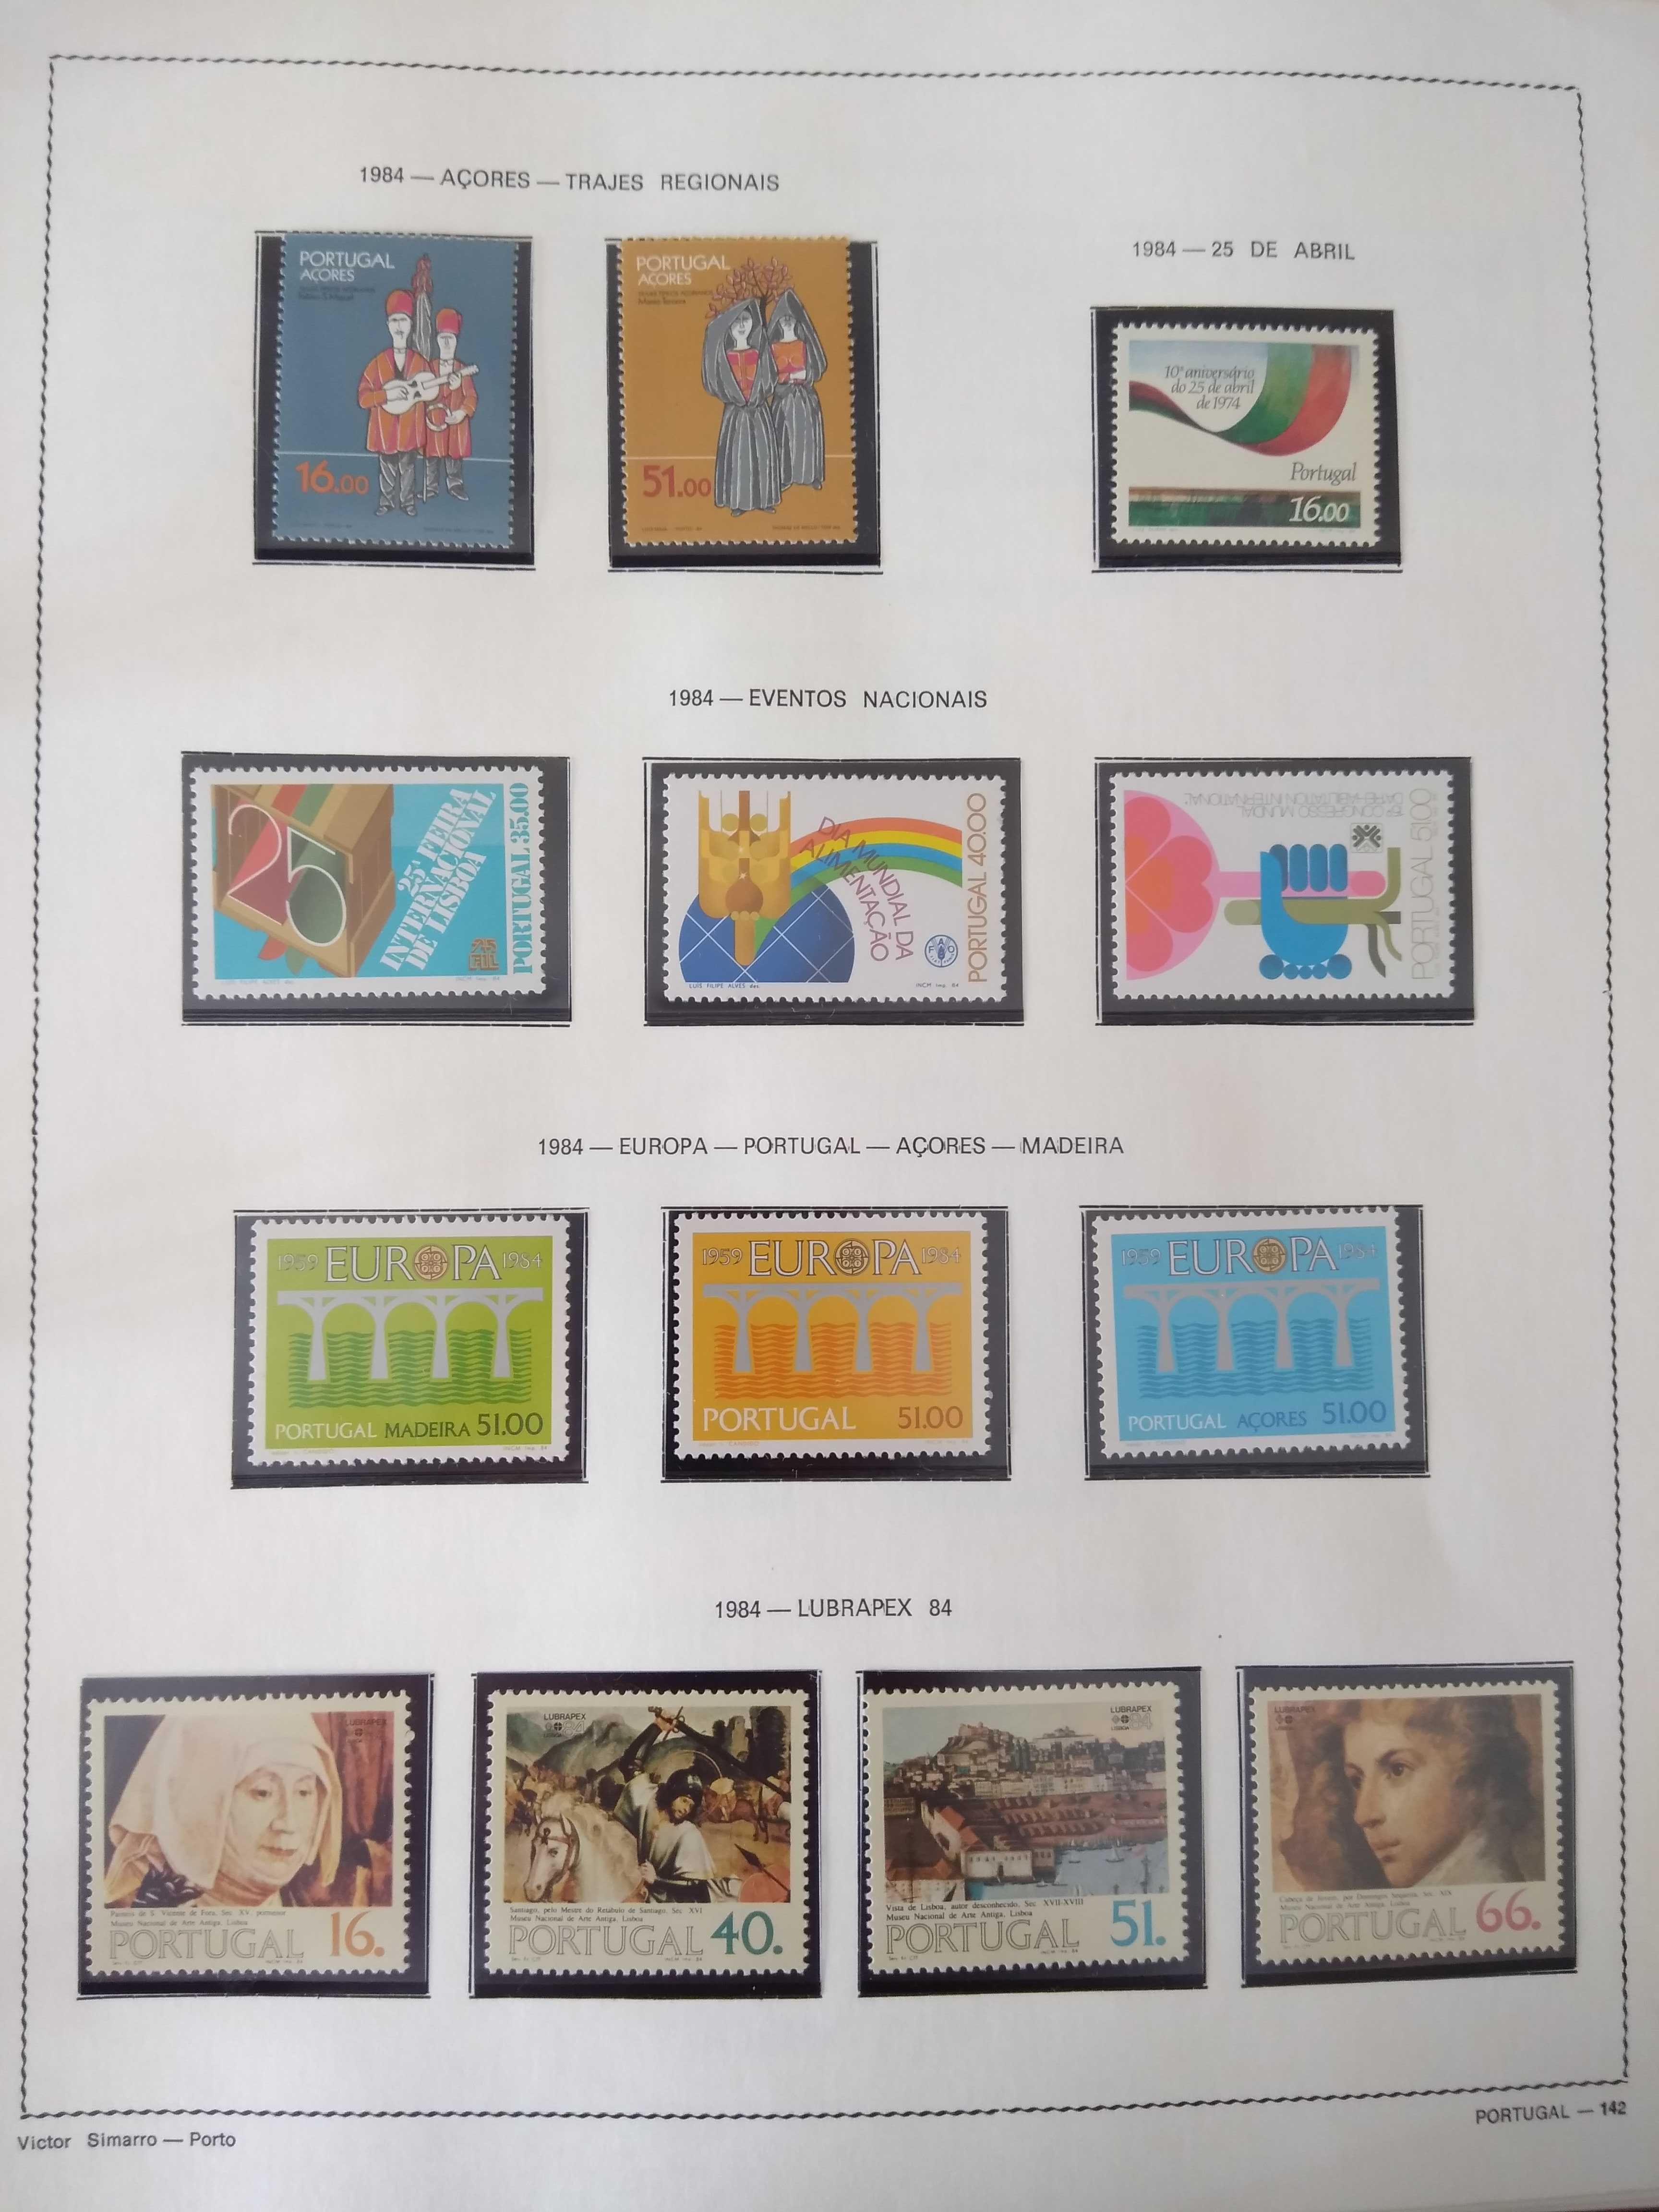 Fantástica coleção de selos de Portugal de 1980 a 1988